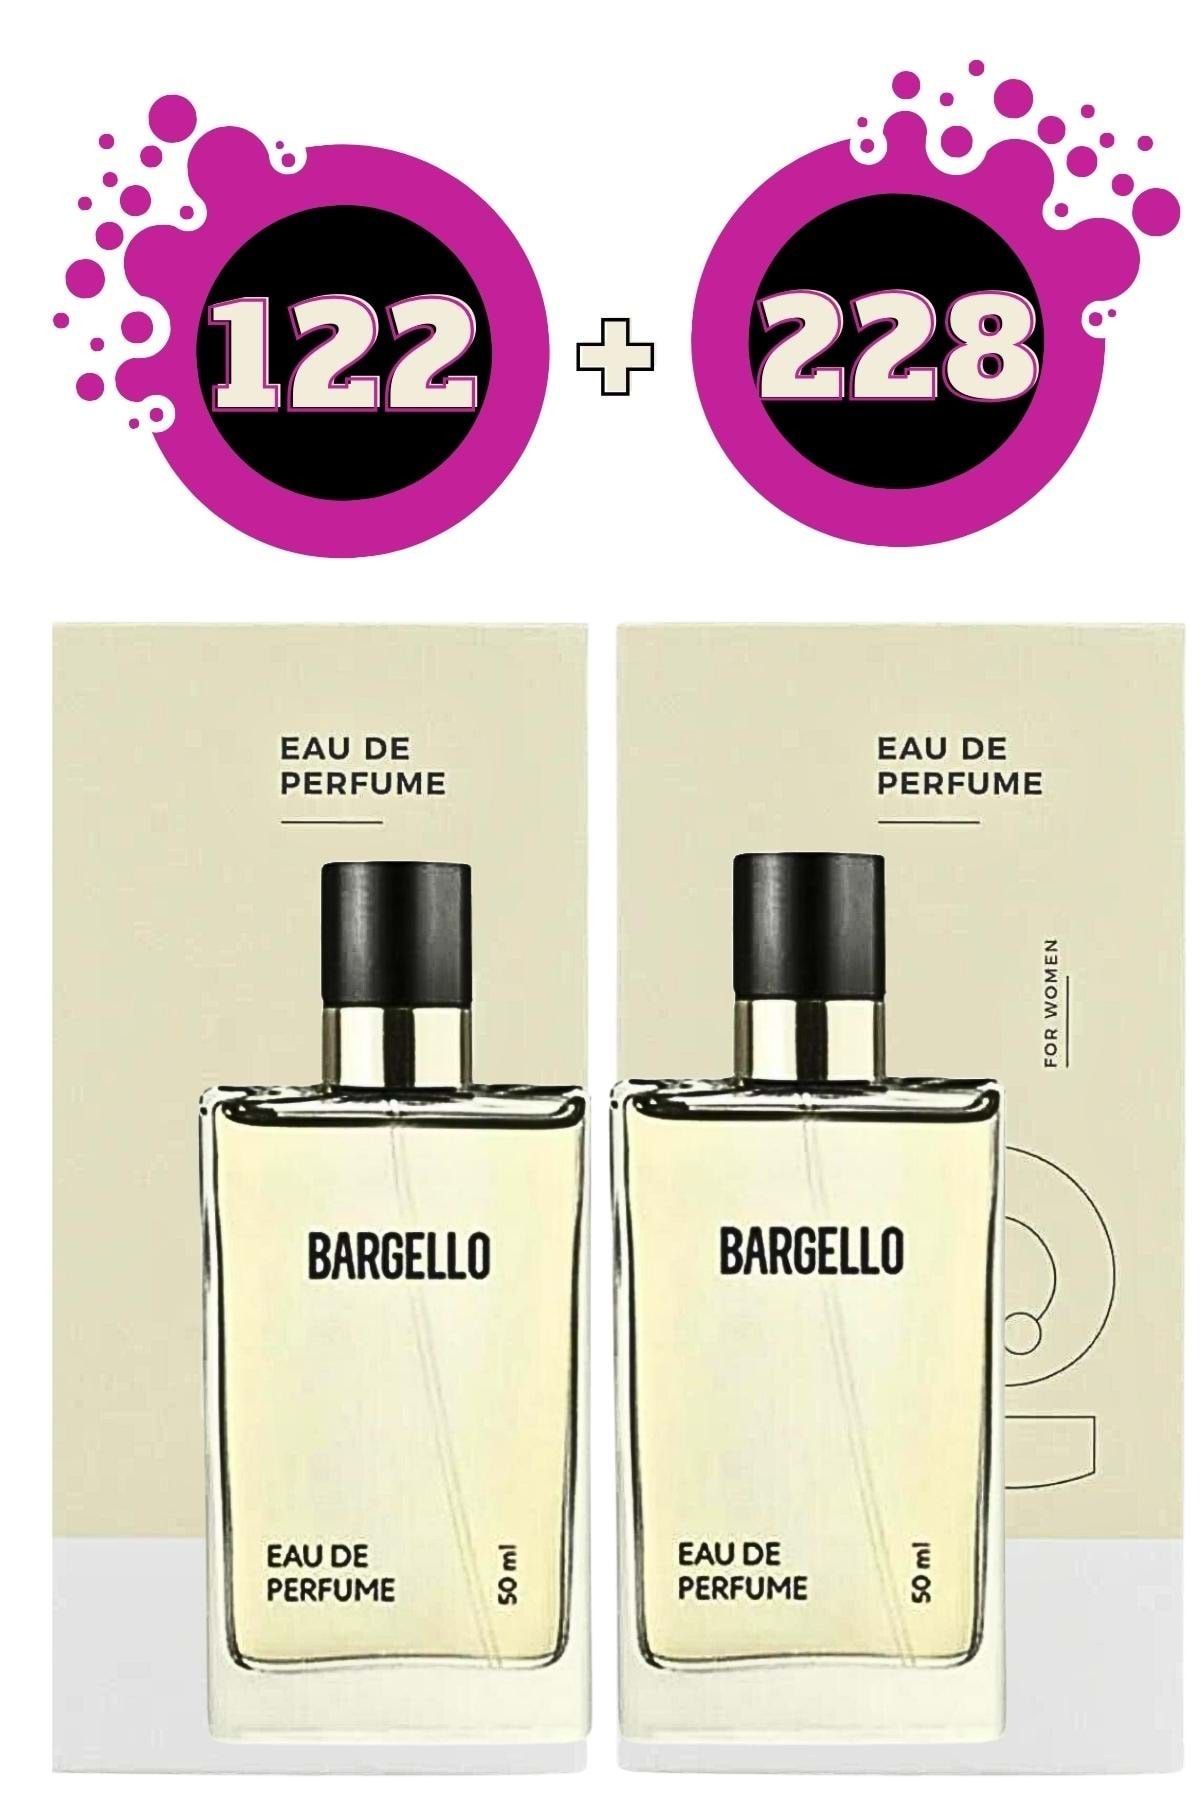 Bargello 122 Oriental Kadın 228 Edp Oriental Kadın Parfüm Seti